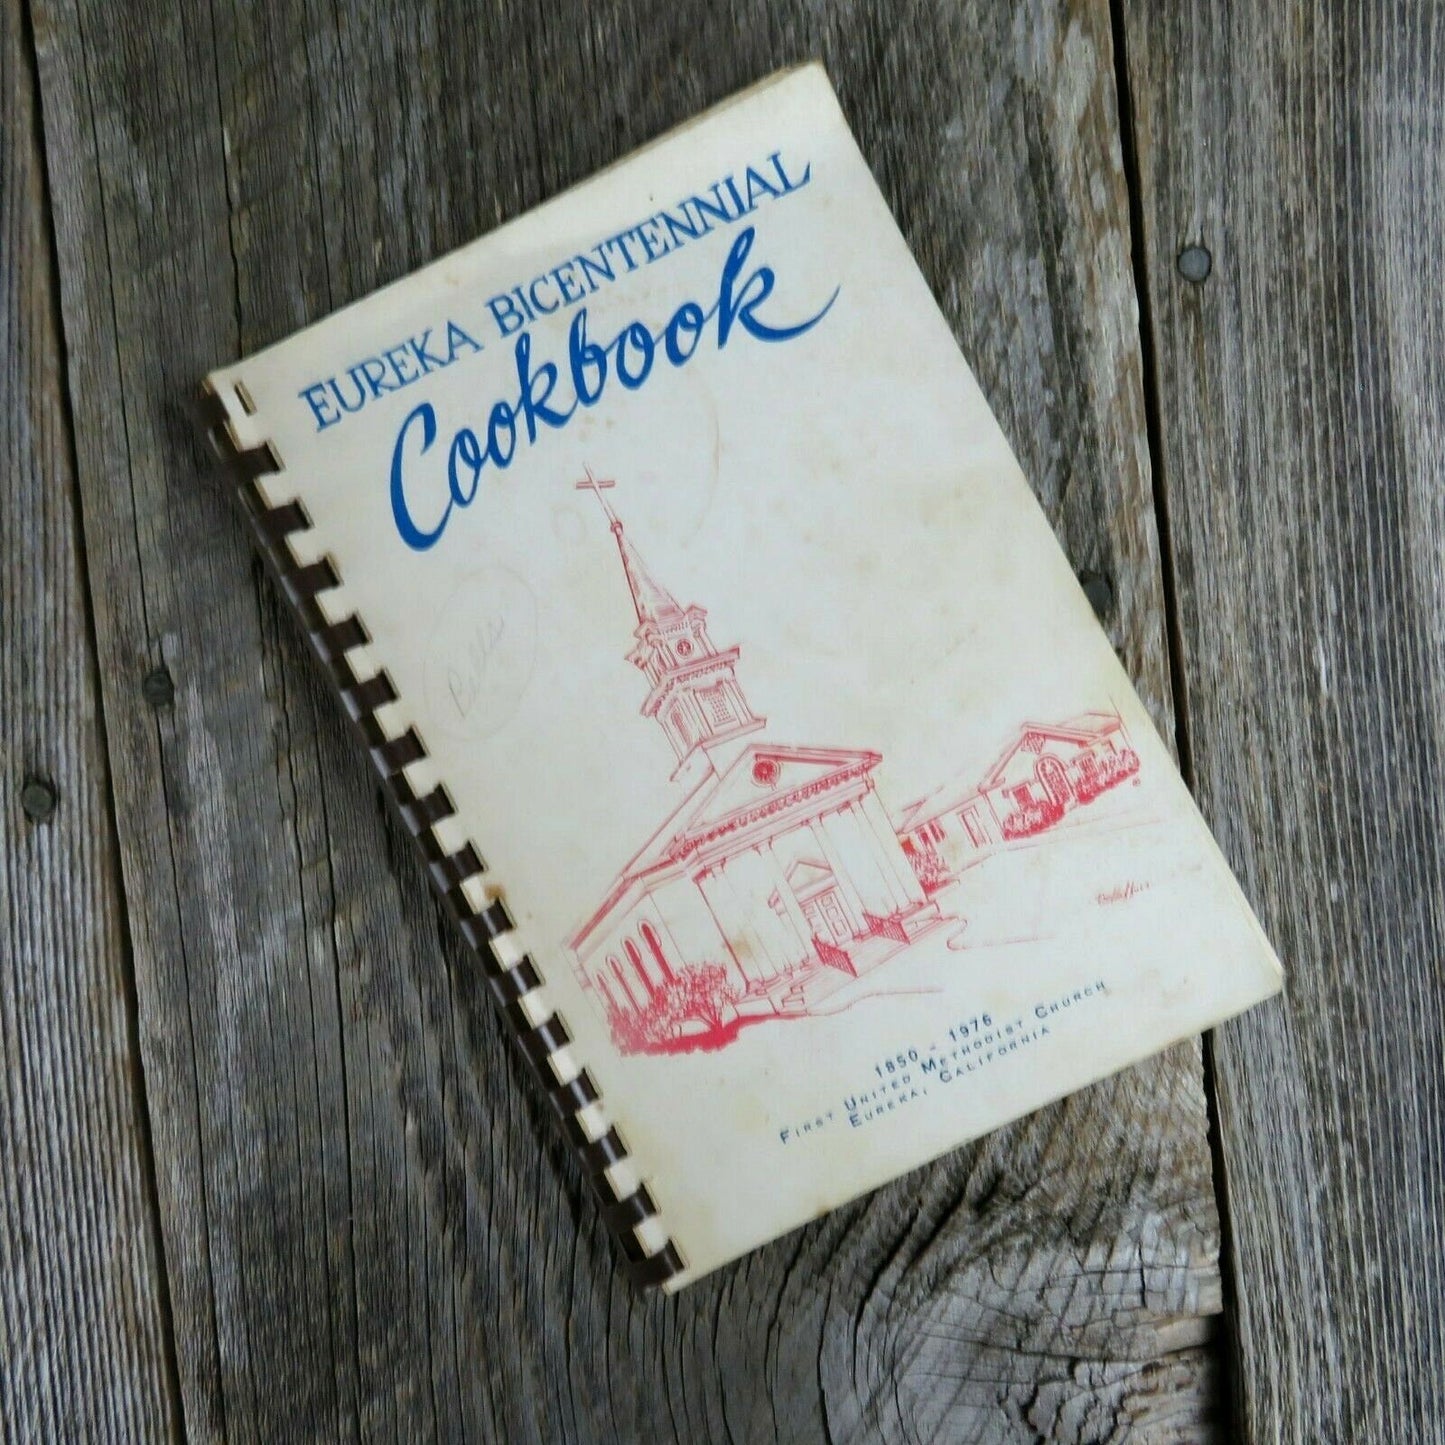 Vintage California Church Cookbook Eureka First United Methodist 1975 - At Grandma's Table